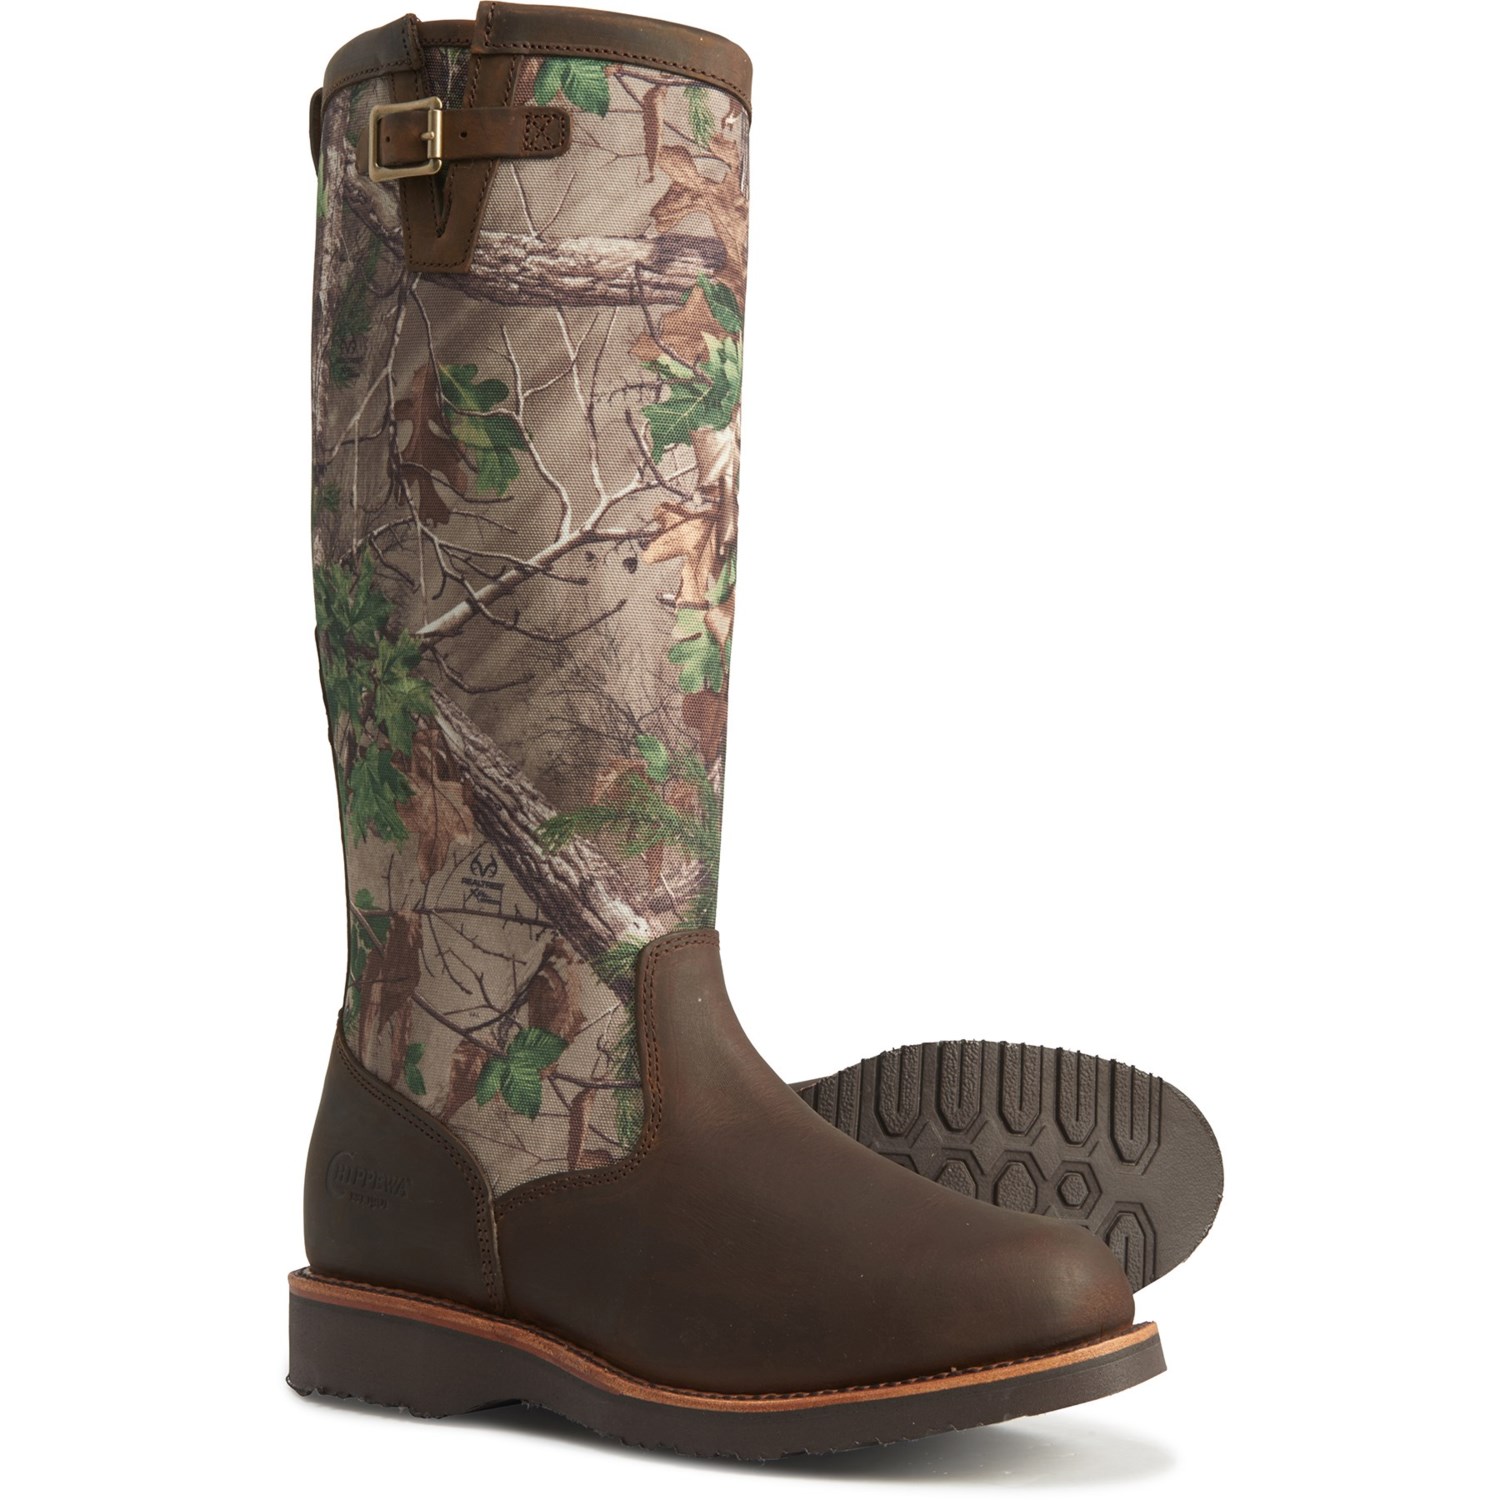 chippewa snake boots waterproof